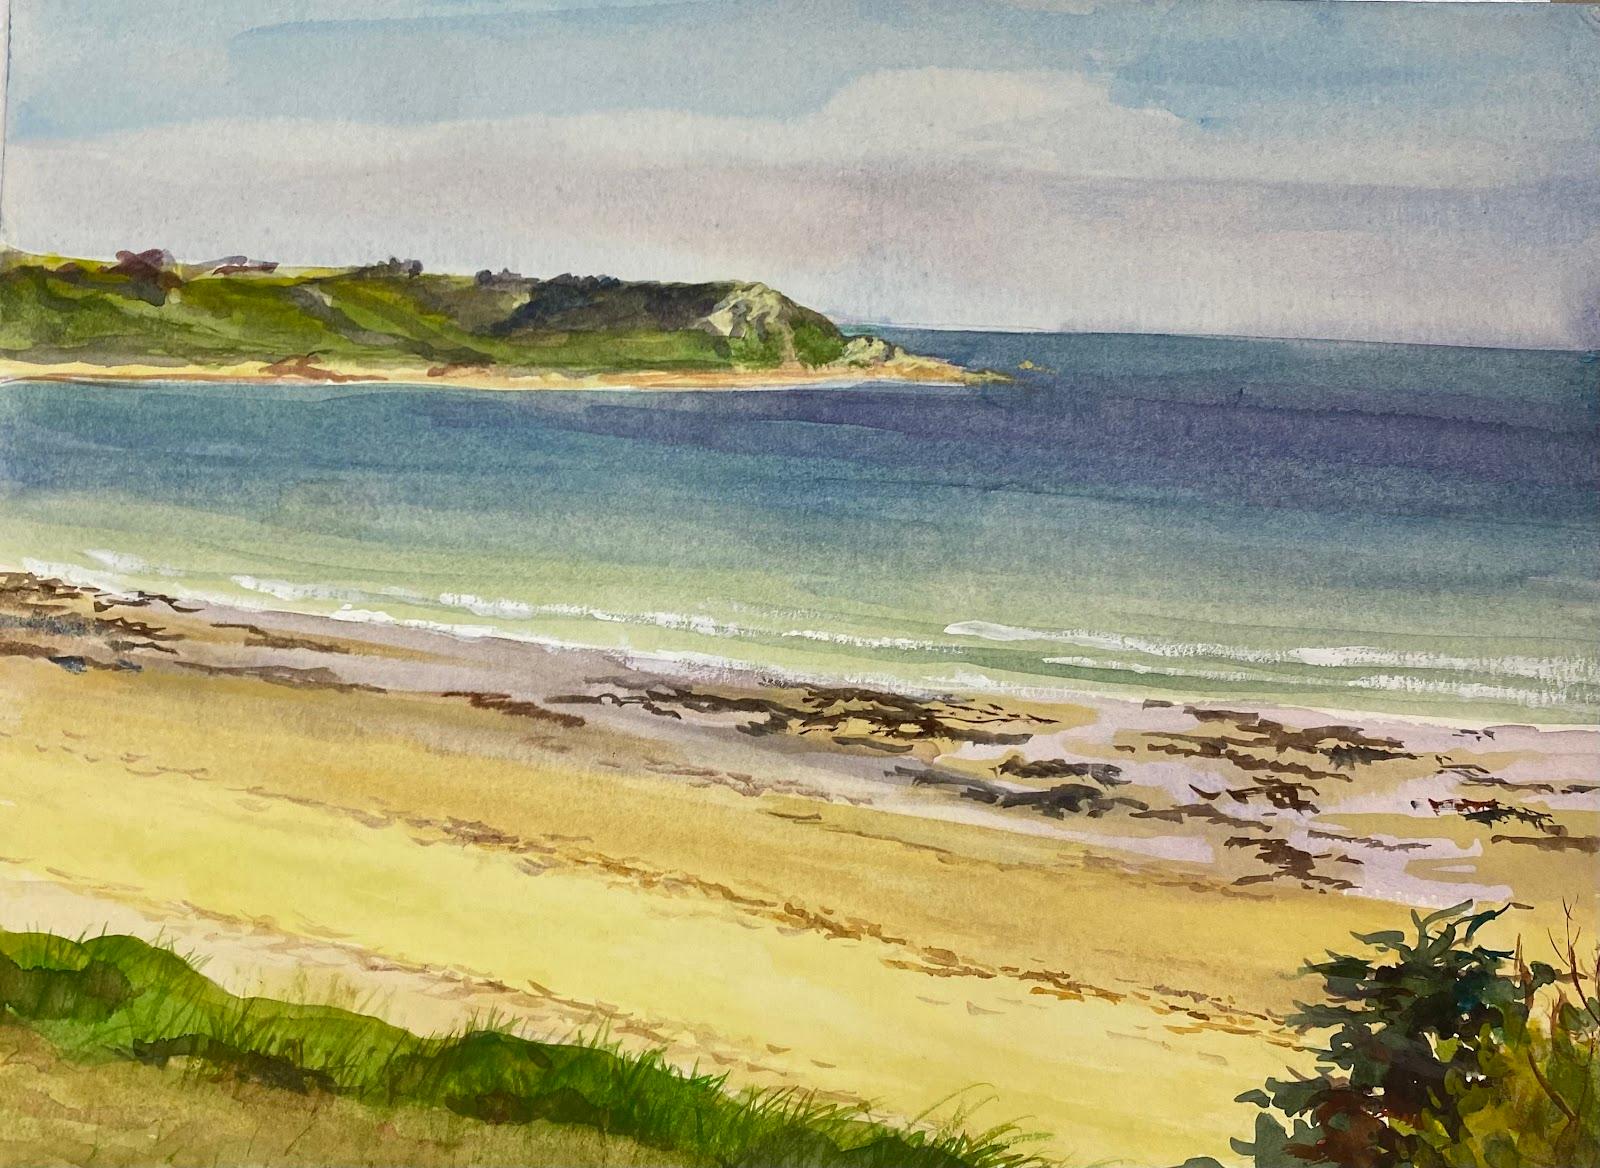 Josine Vignon Landscape Art - Post-Impressionist Painting The Beach & Cliffs at Beg-ar-Fry Saint-Jean-du-Doigt